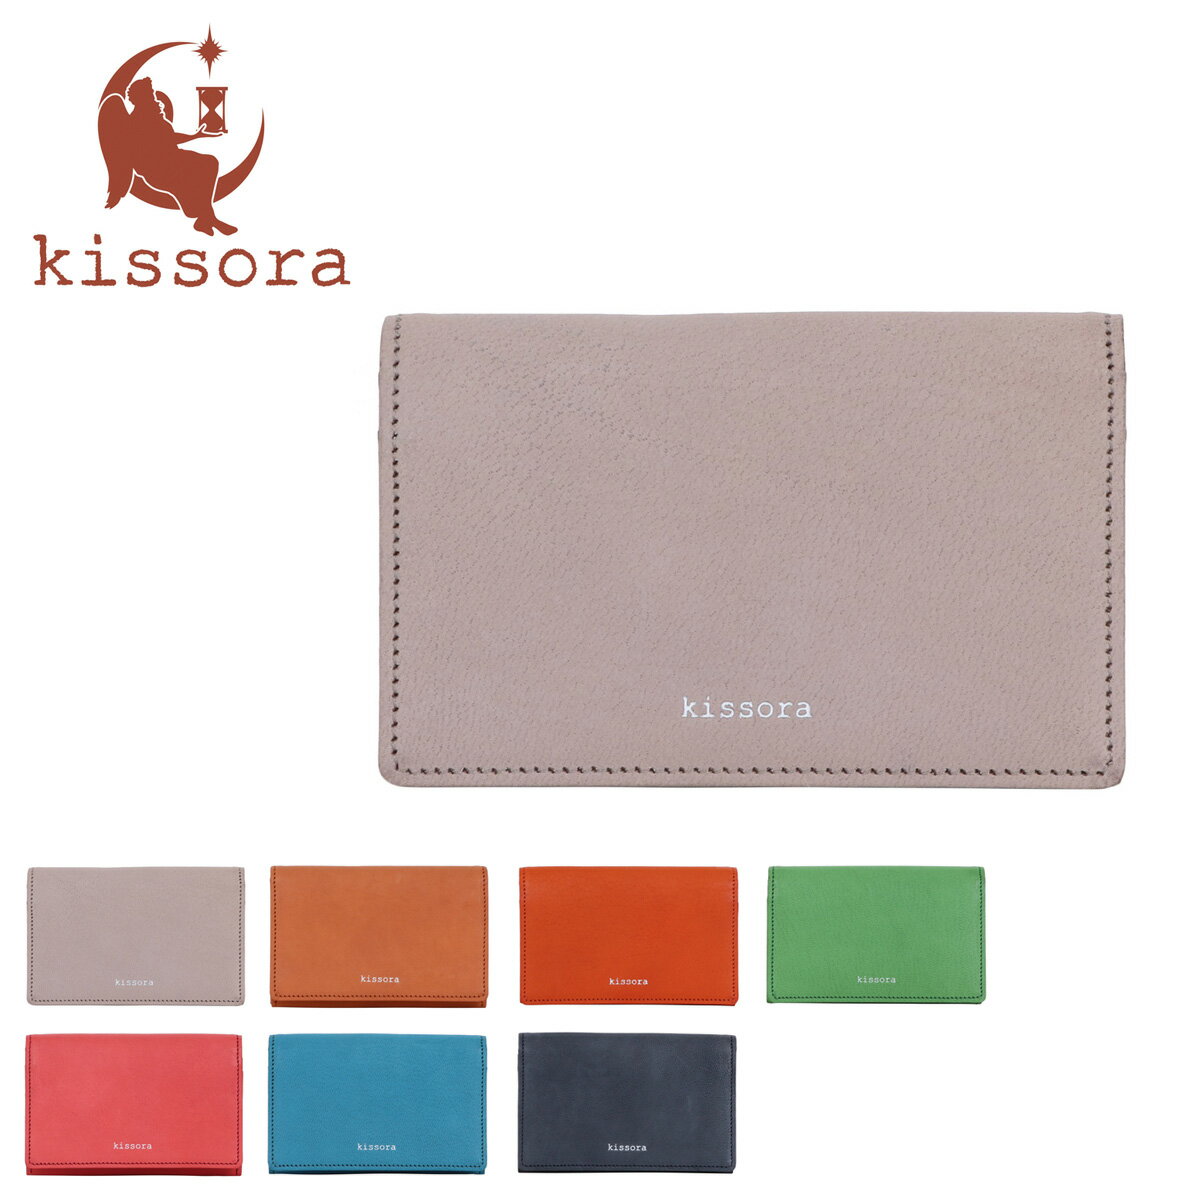 キソラ カードケース ラスティック レディースKIAS-012 kissora | 名刺入れ 日本製[2208ik]